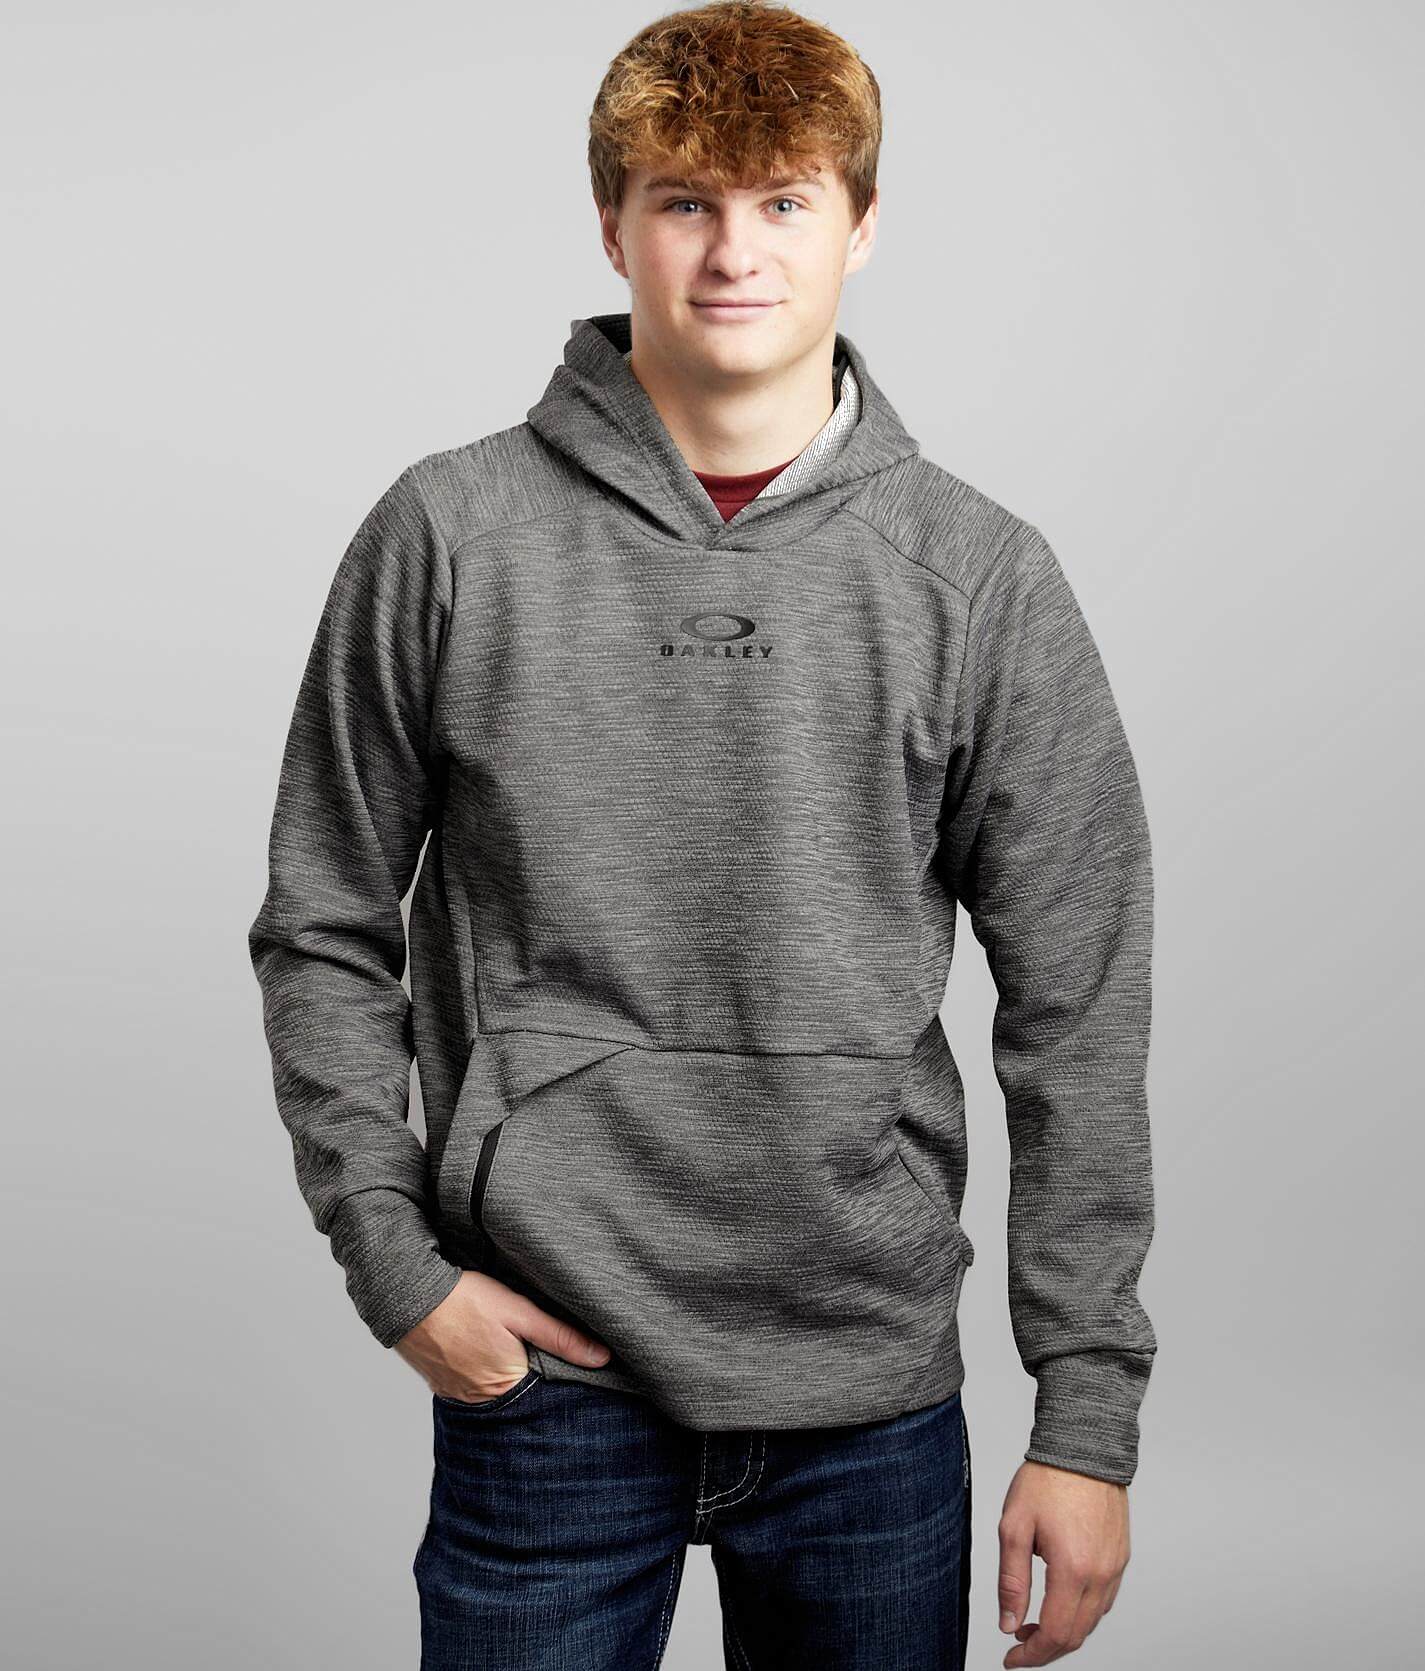 oakley hooded sweatshirt